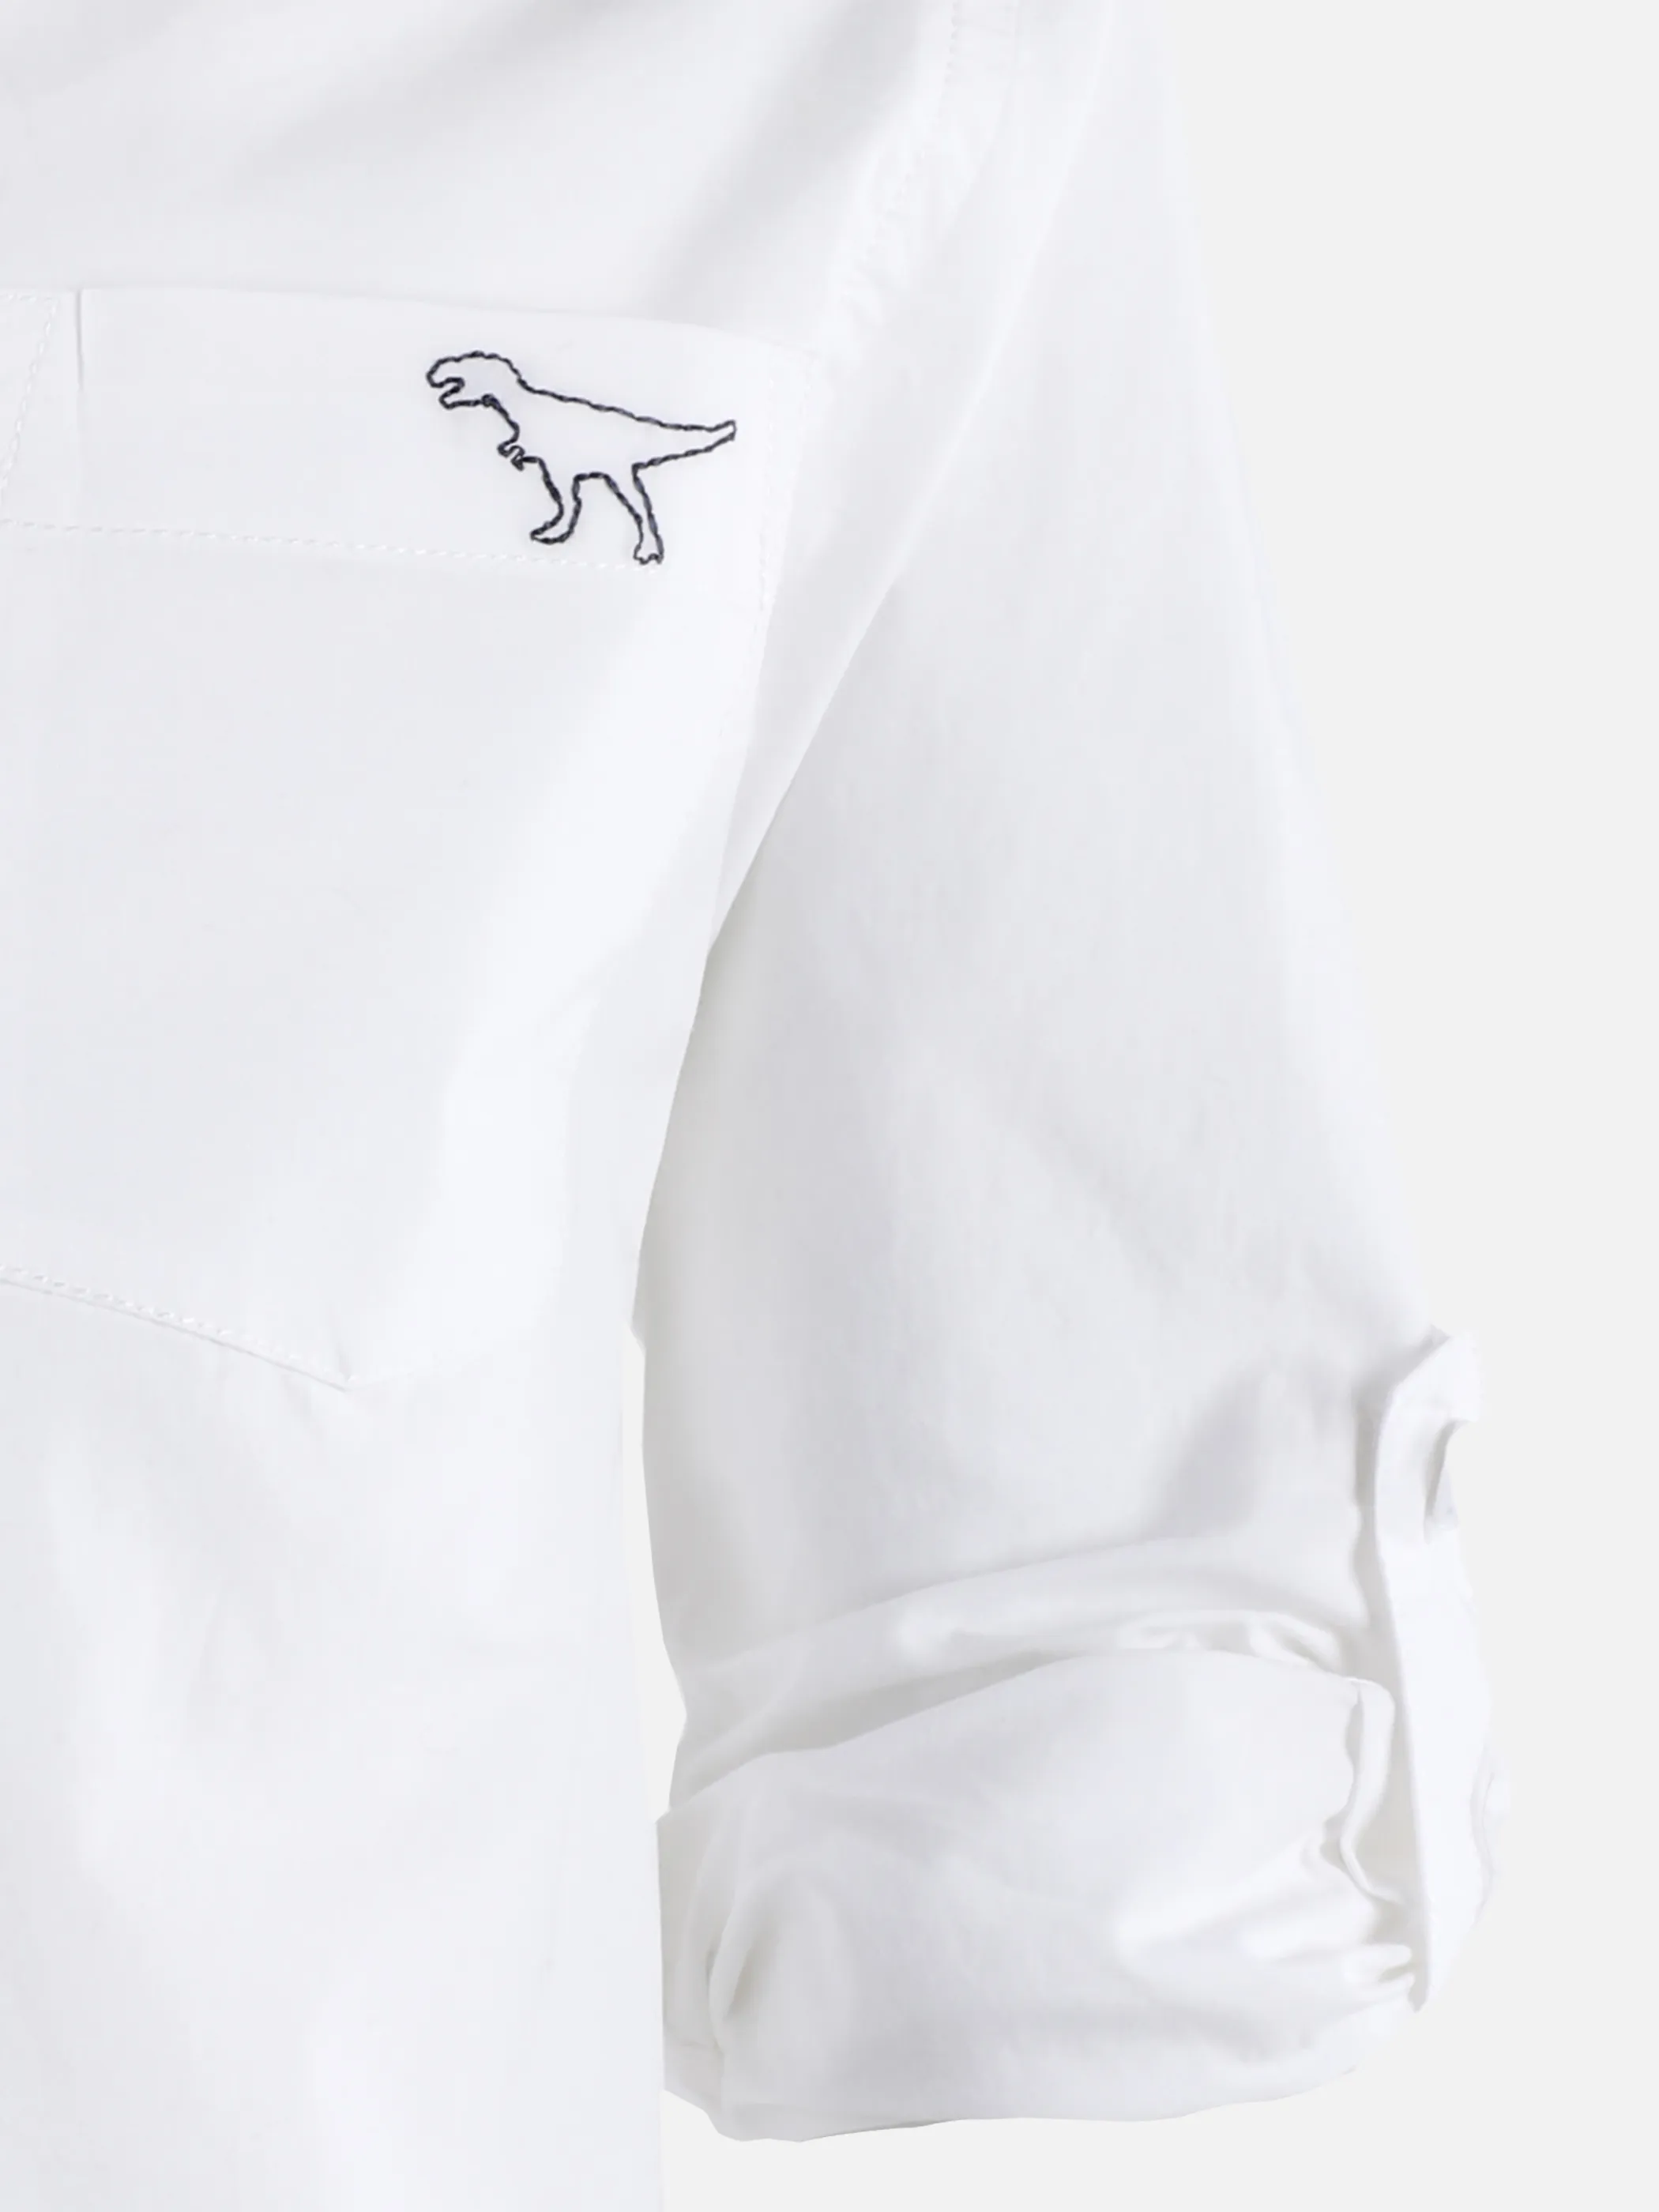 Stop + Go KJ Langarm Hemd mit kleiner Dino Stickerei in weiß Weiß 890567 WEIß 3